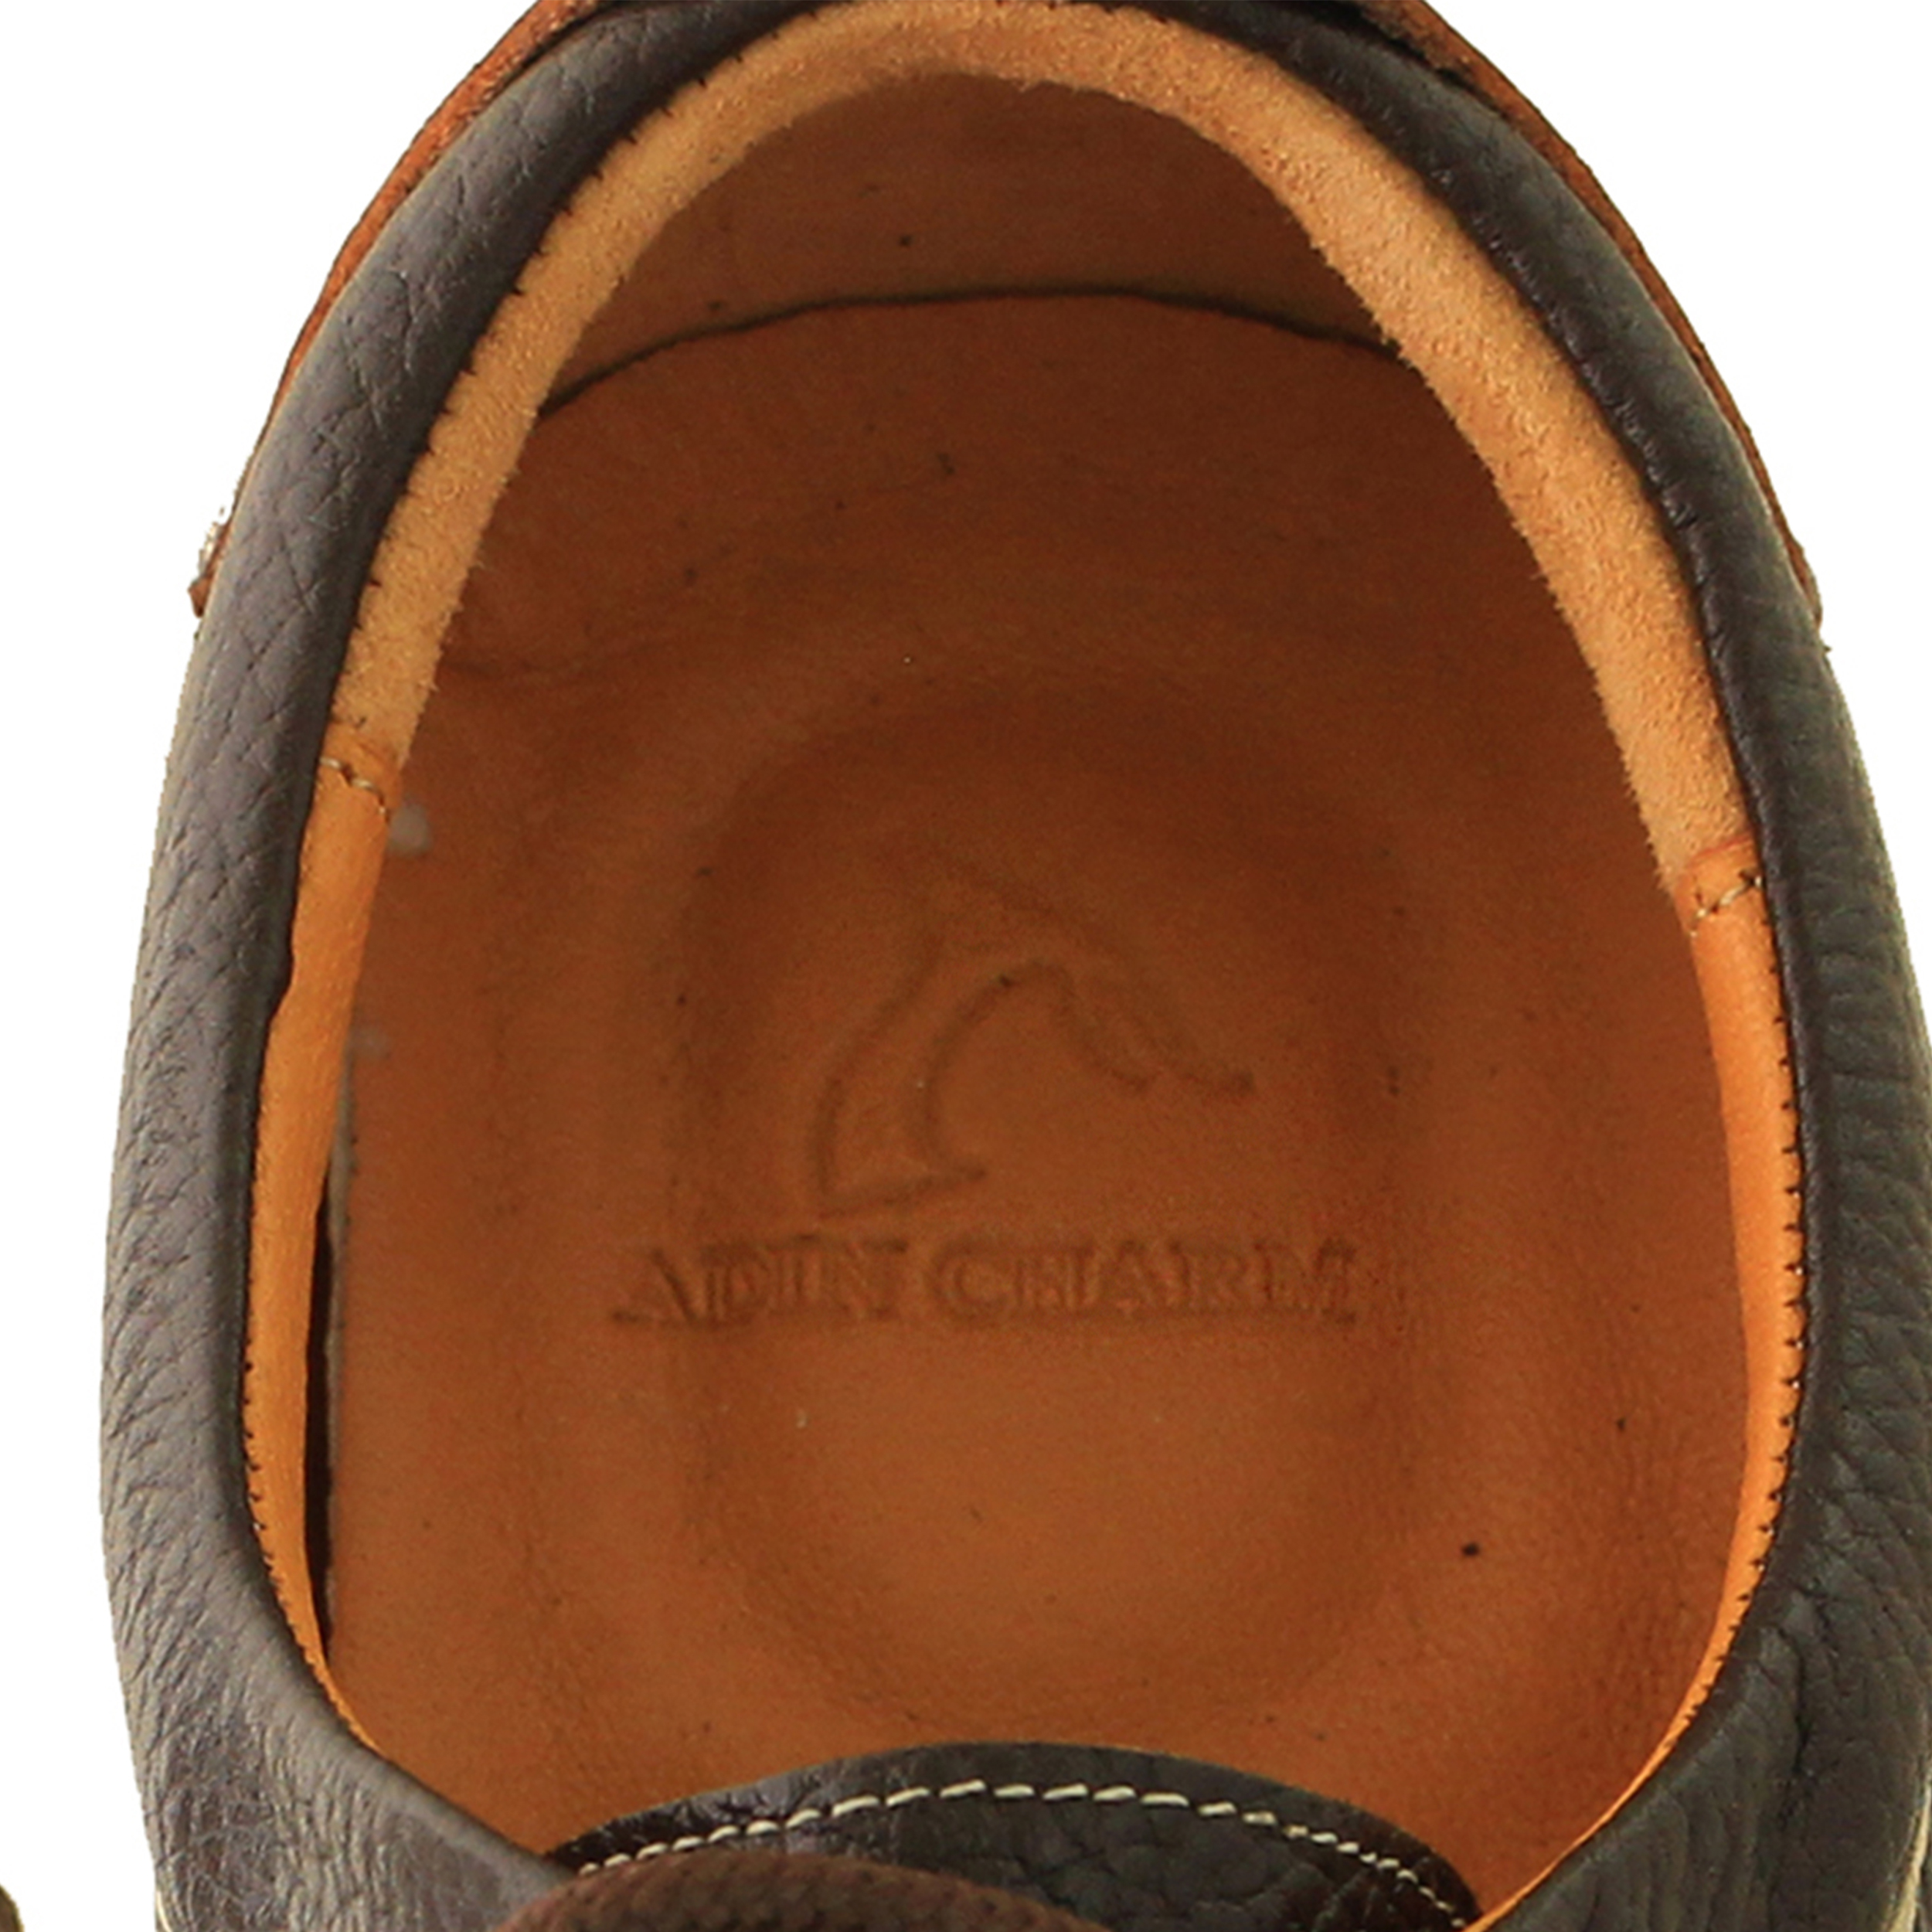 ADINCHARM leather men's casual shoes,DK103.qa Model